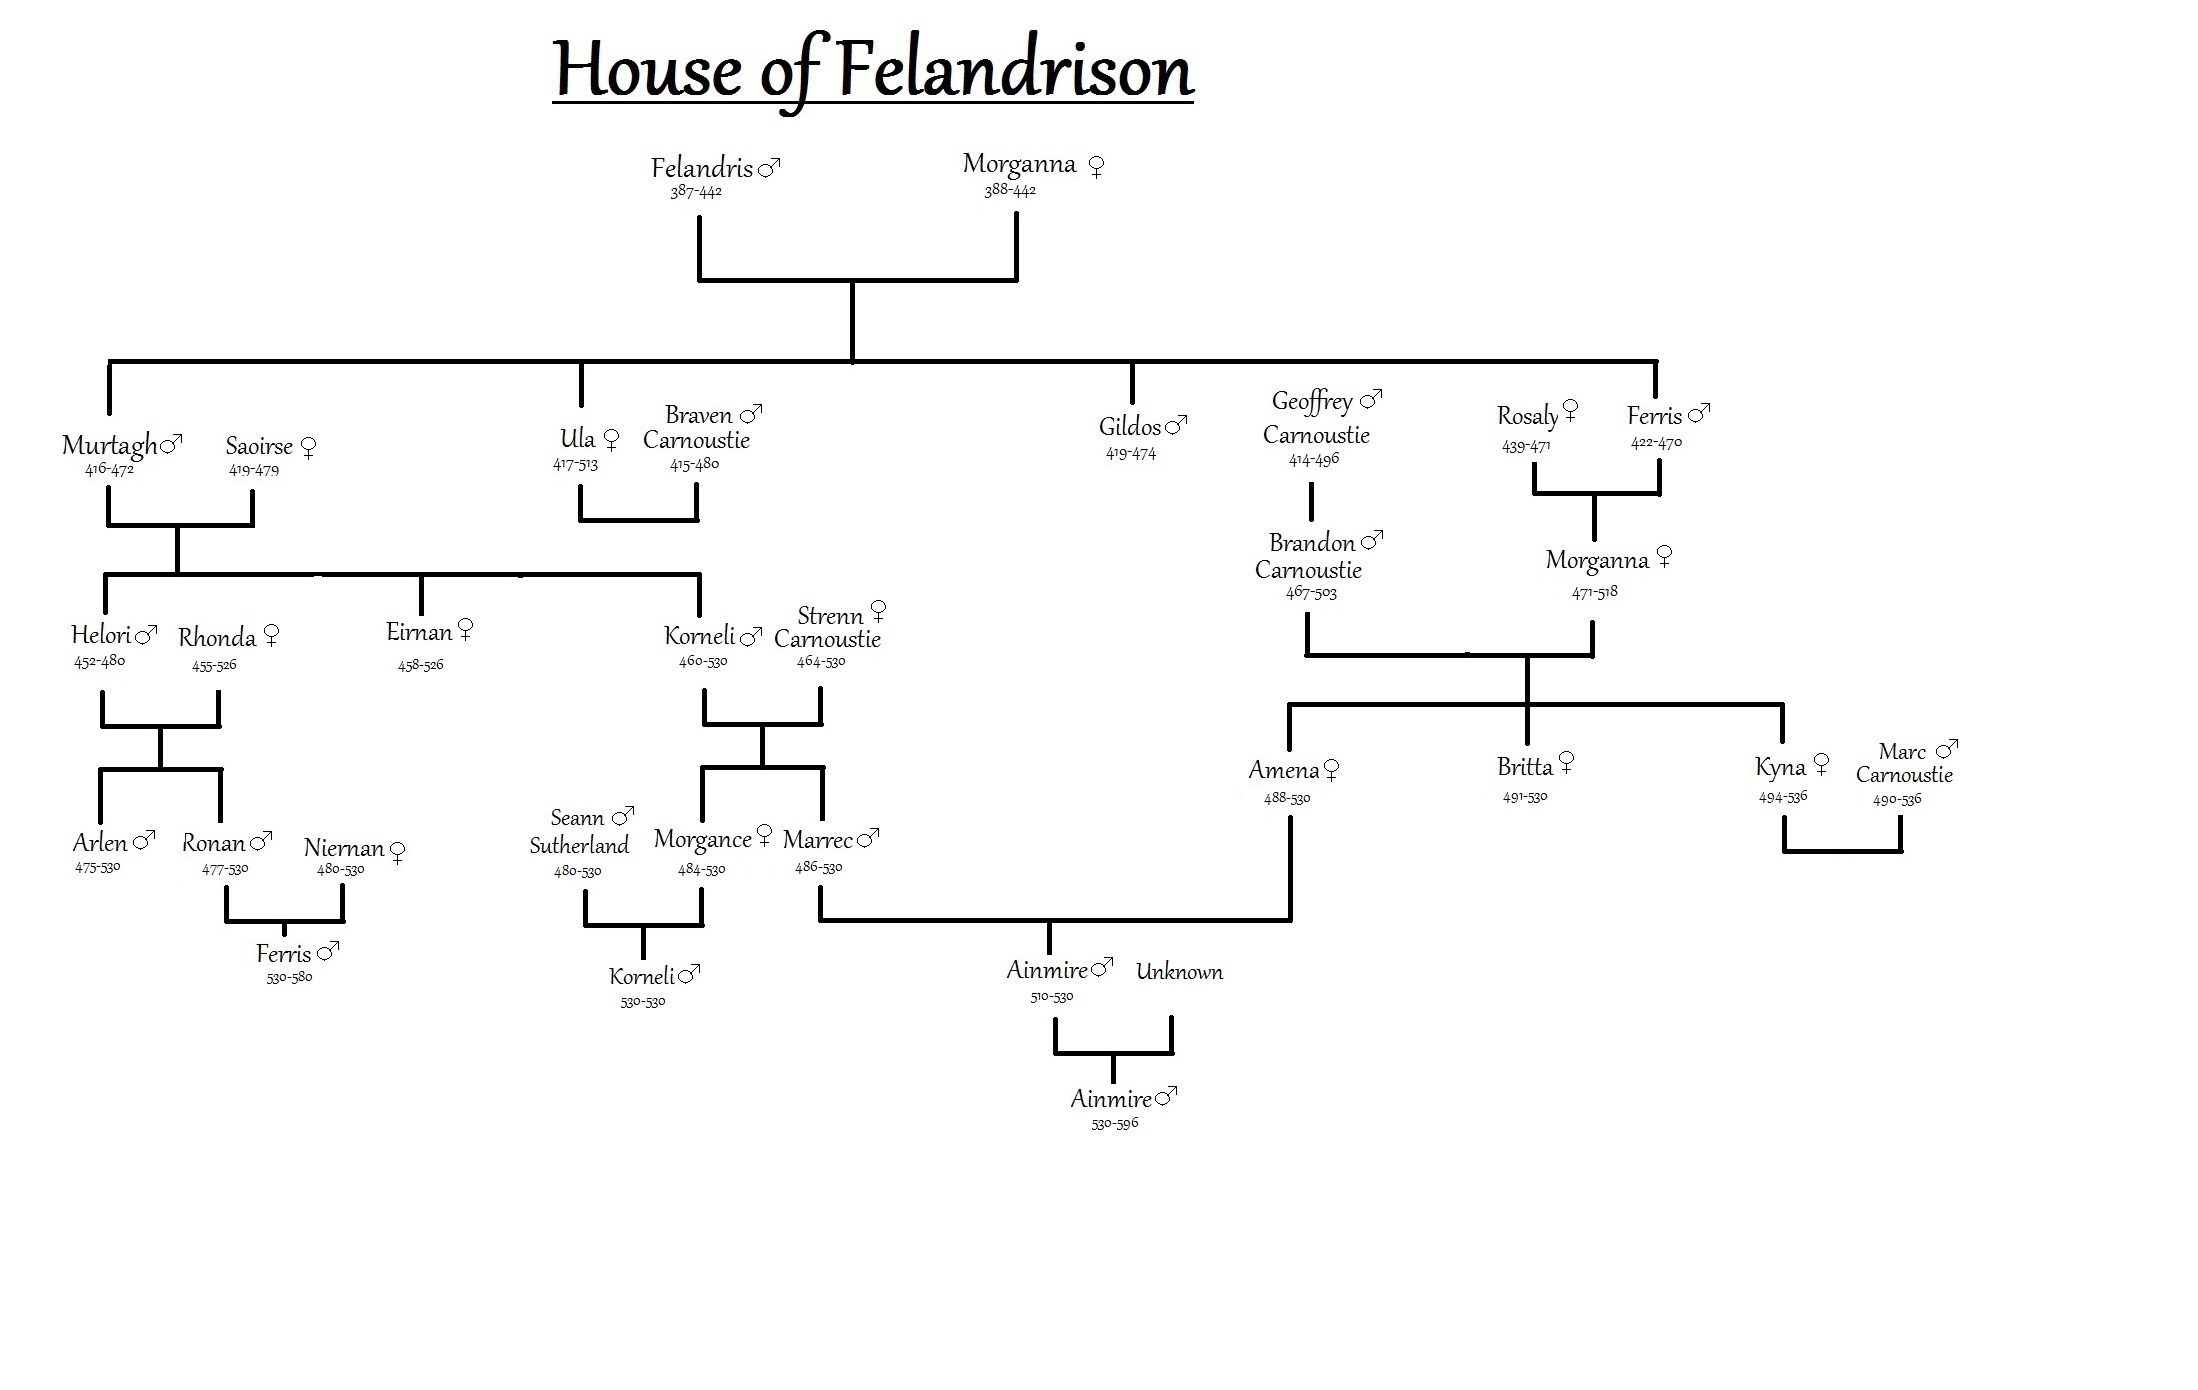 House of Felandrison Family Tree.jpg